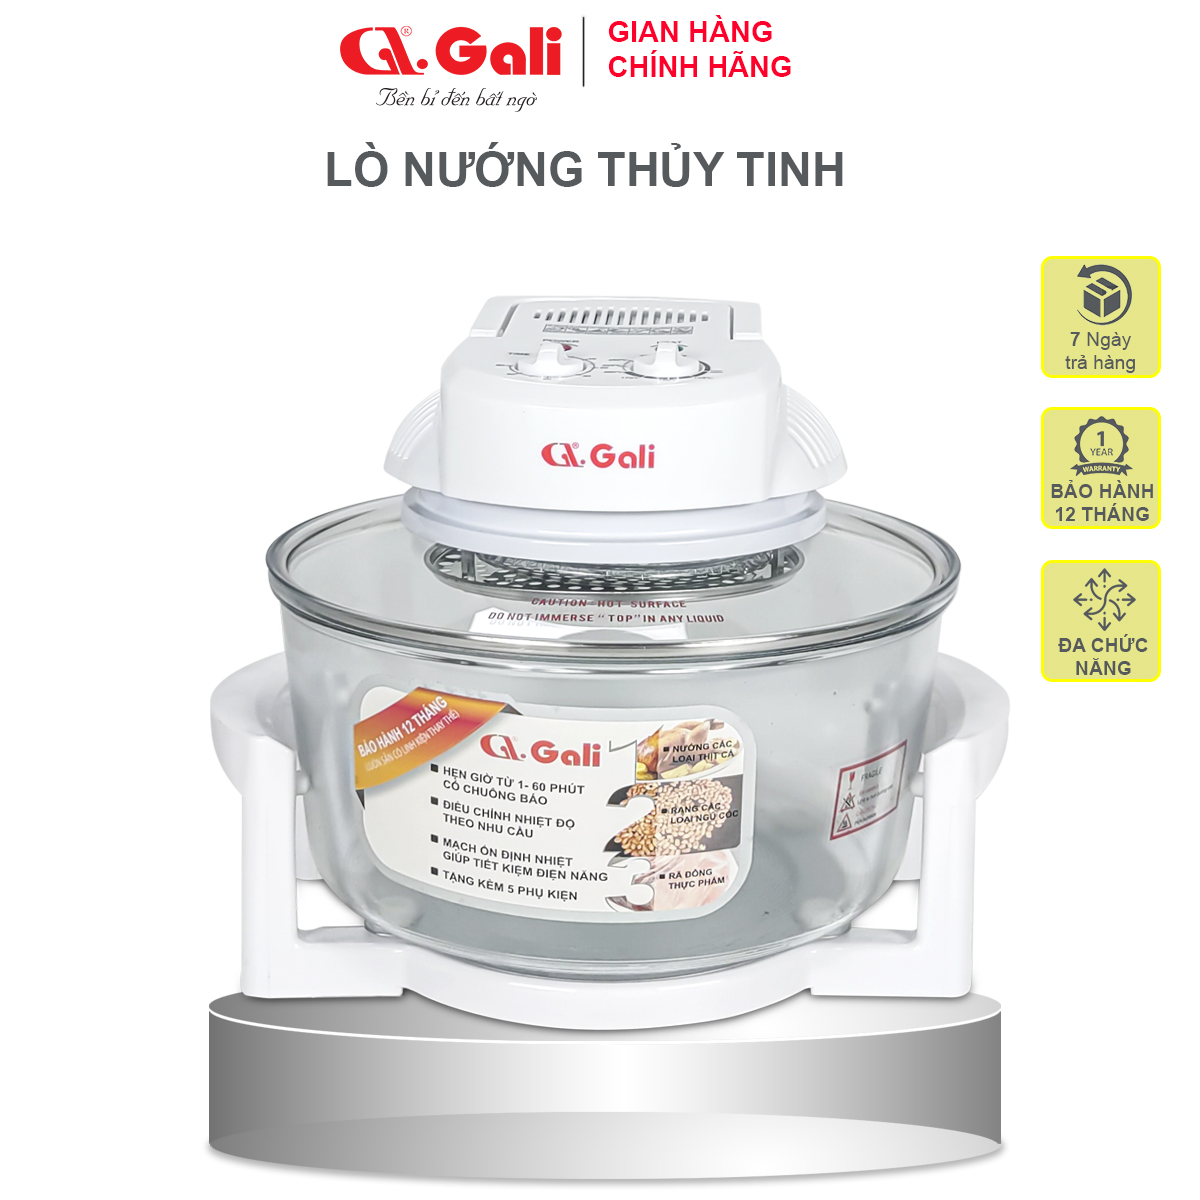 Lò nướng thủy tinh đa năng Gali GL-1121 17 lít 1300w, hàng chính hãng bảo hành 24 tháng, tặng kèm 5 phụ kiện tiện lợi, hàng chính hãng 100%, bảo hành 12 tháng Gali